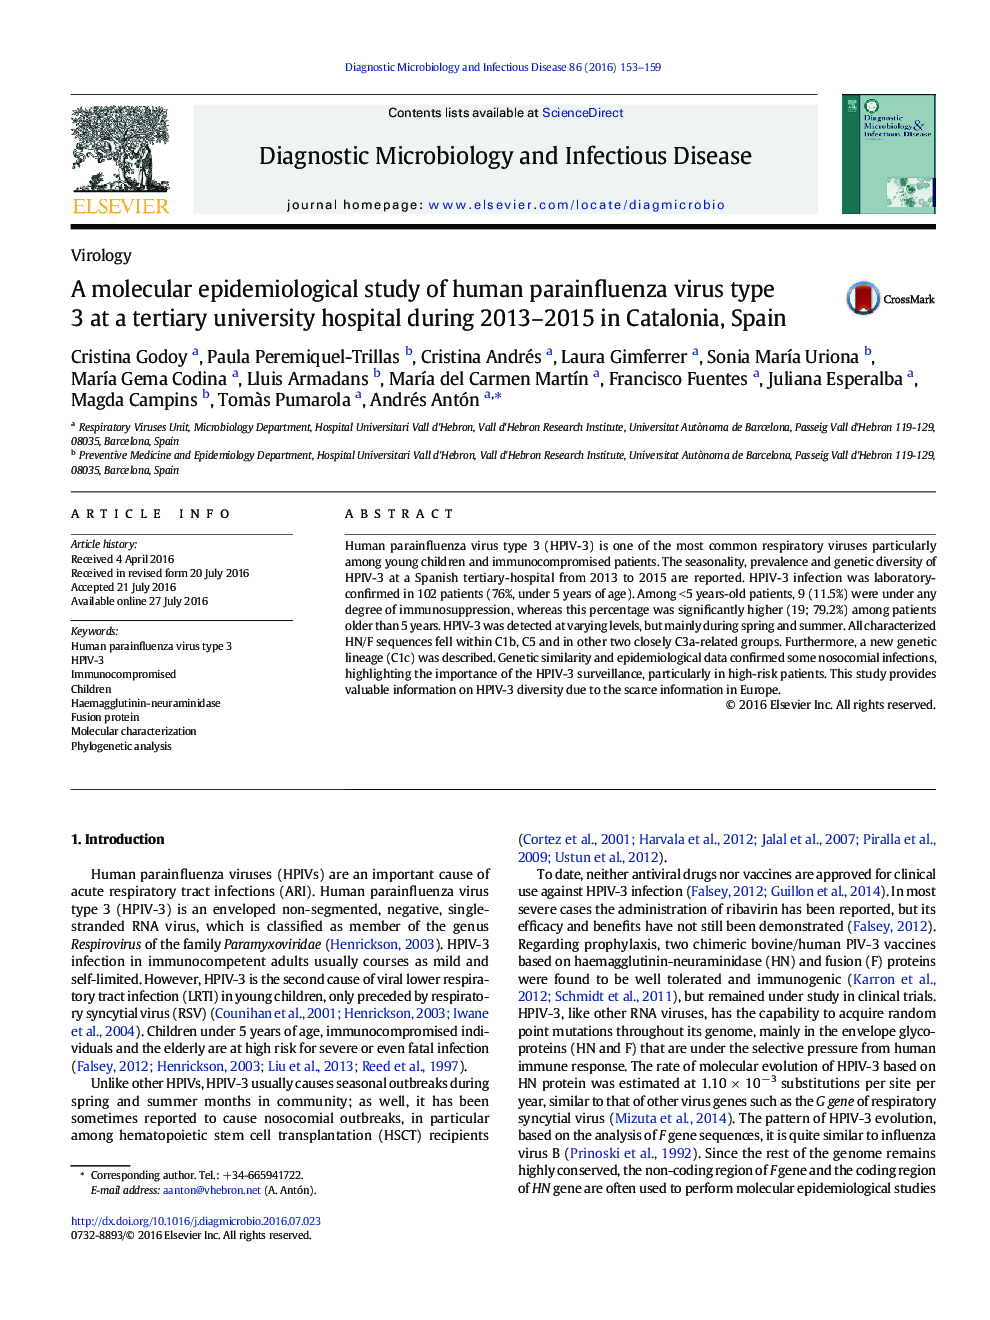 یک مطالعه اپیدمیولوژیک ویروس پنیری پنیر انسانی نوع 3 در بیمارستان دانشگاه تربیتی در سال 2013 تا 2015 در کاتالونیا، اسپانیا 